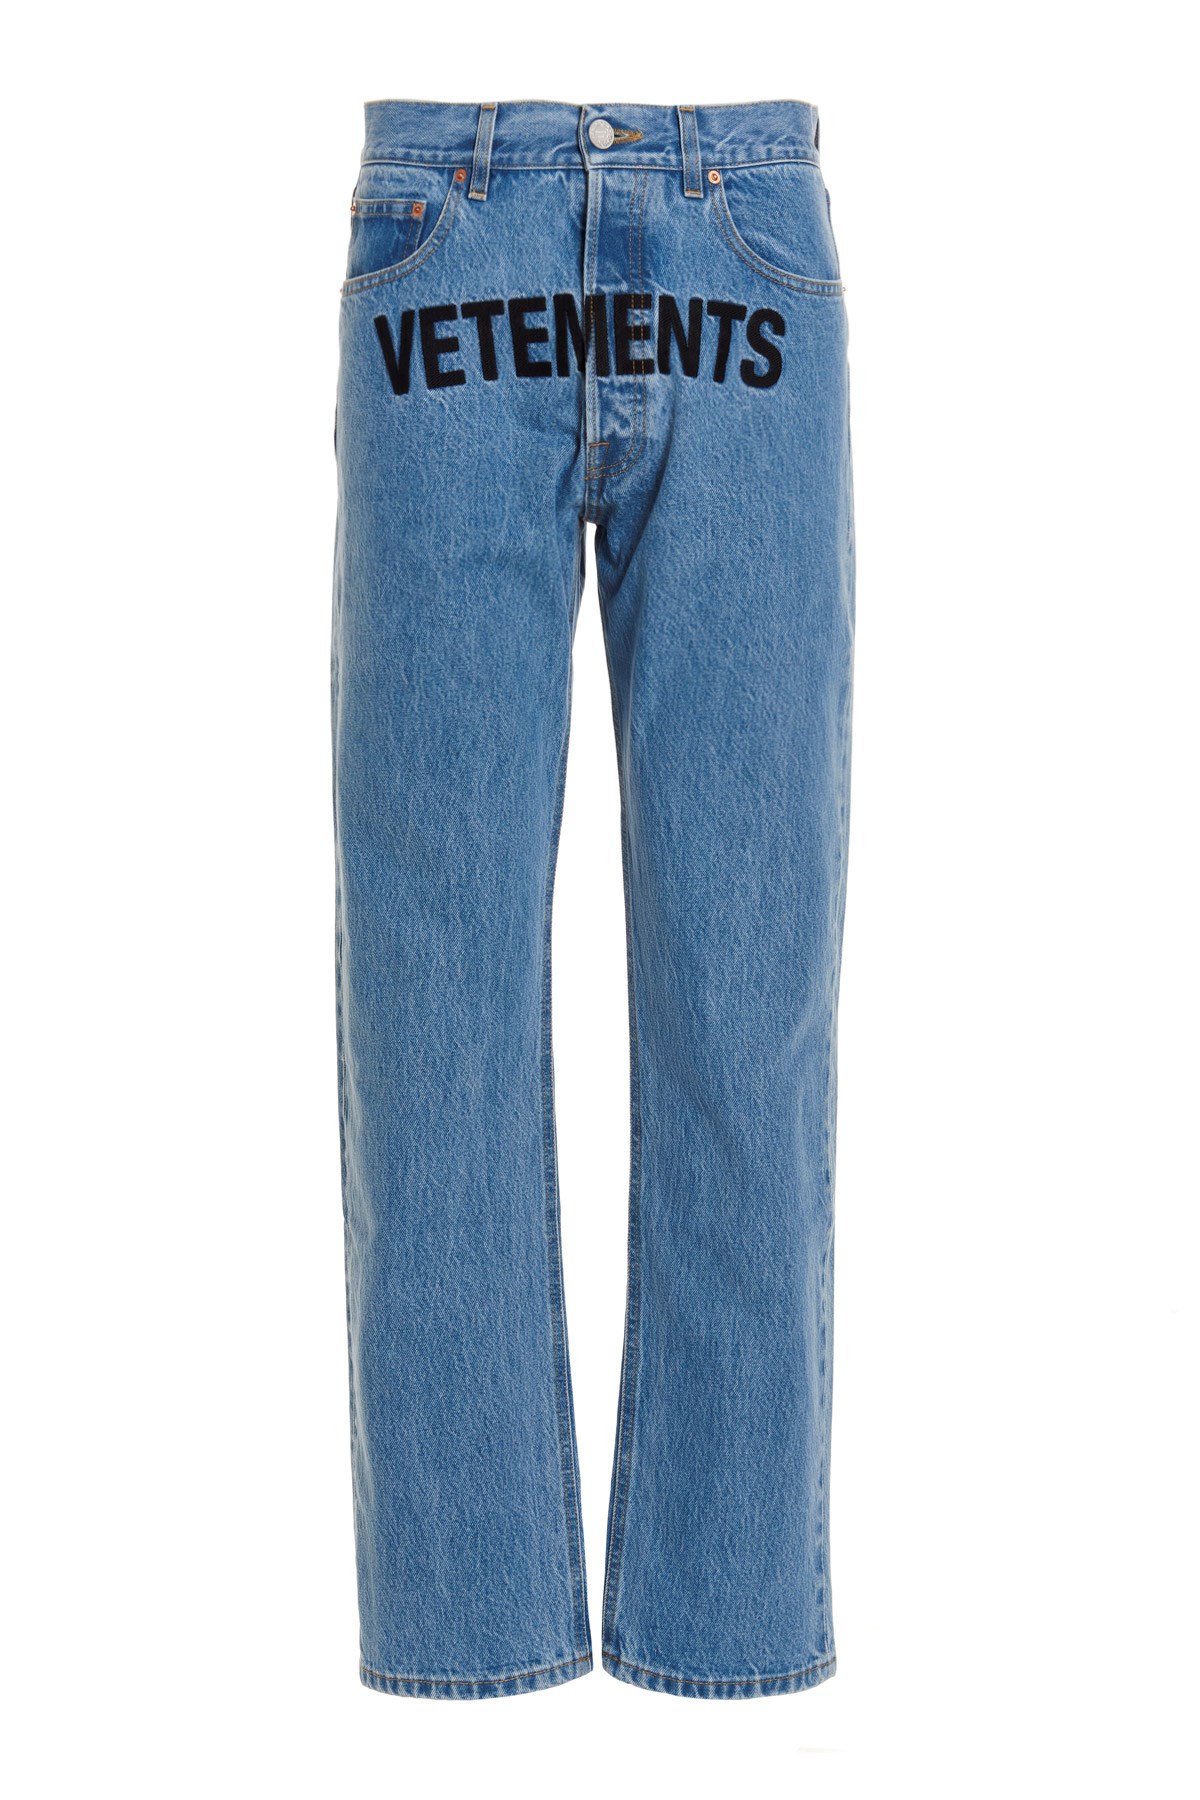 VETEMENTS Logo Patch Jeans